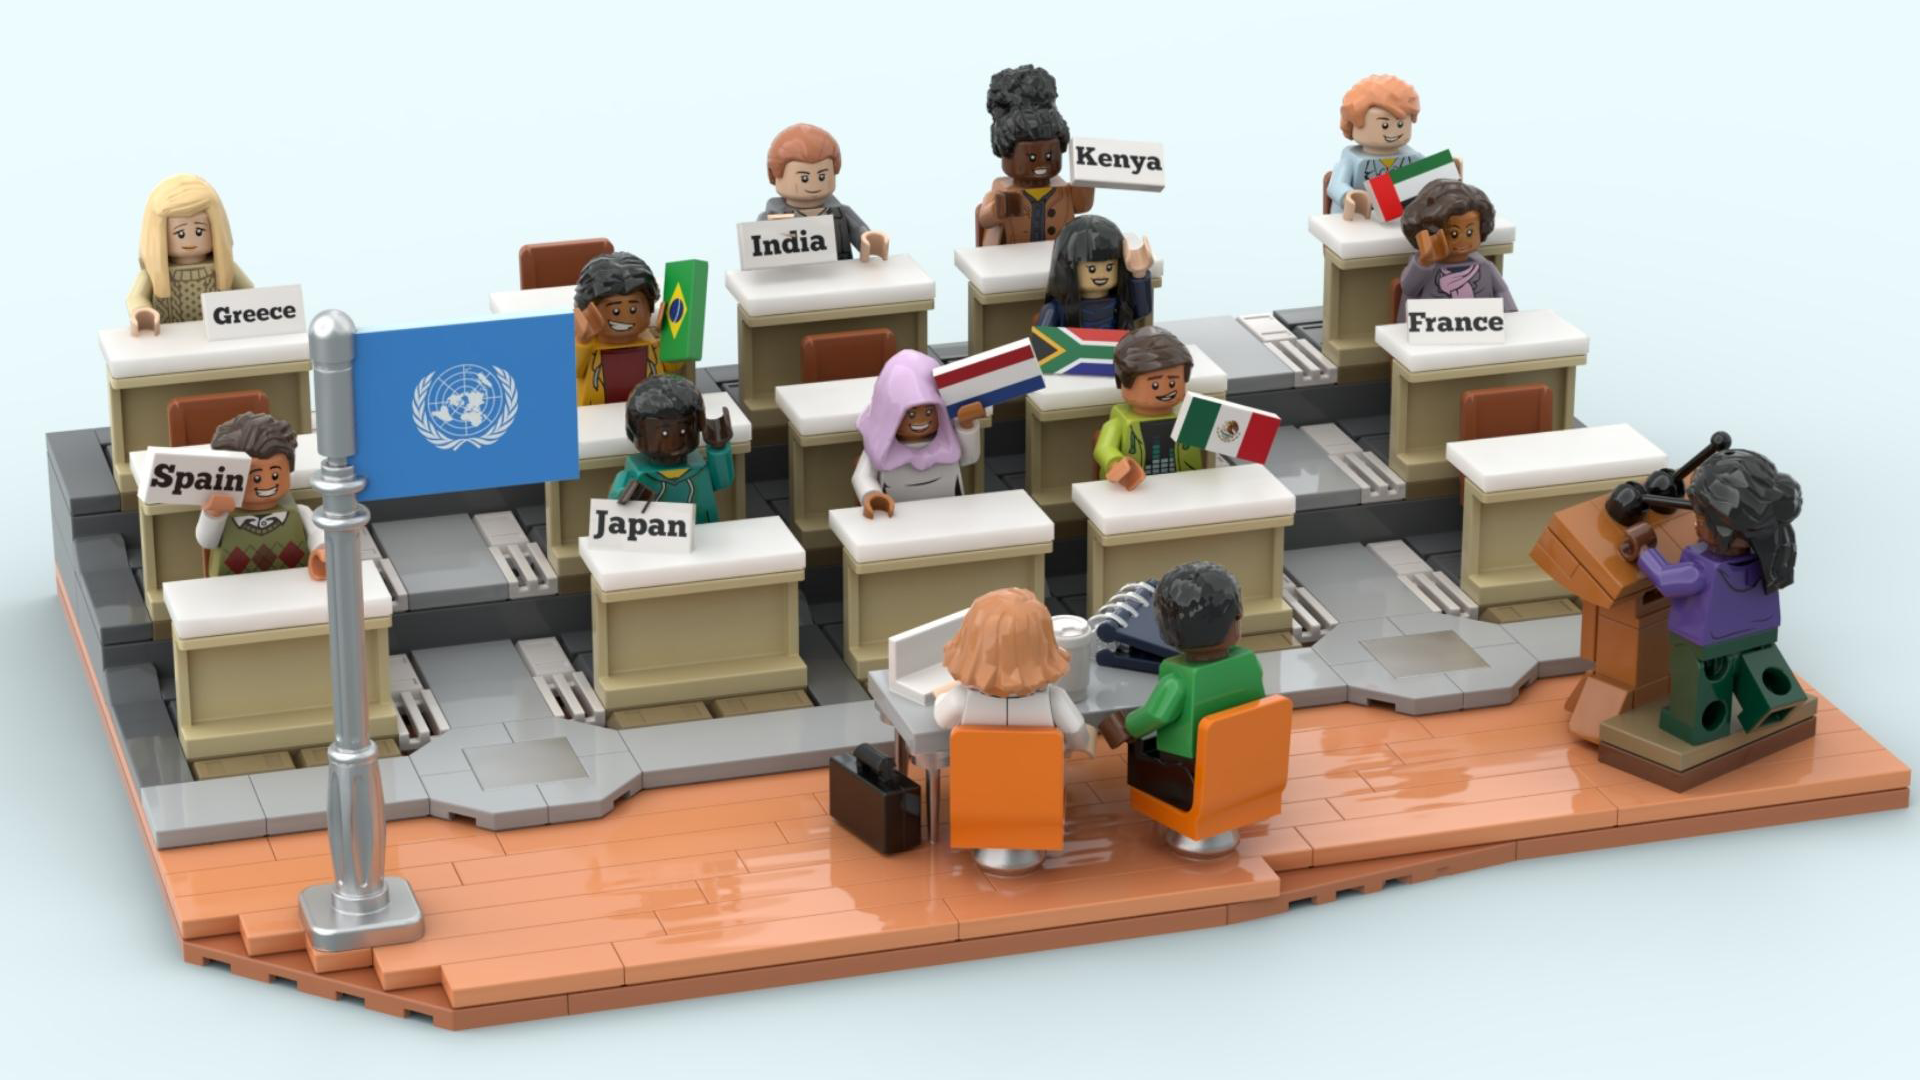 In 2021 daagde UNHCR studenten uit om ideeën te ontwikkelen om vluchtelingen en hun gastgemeenschappen te helpen. Een artiest bouwde LEGO modellen die de beste ideeën uitbeeldden. © UNHCR